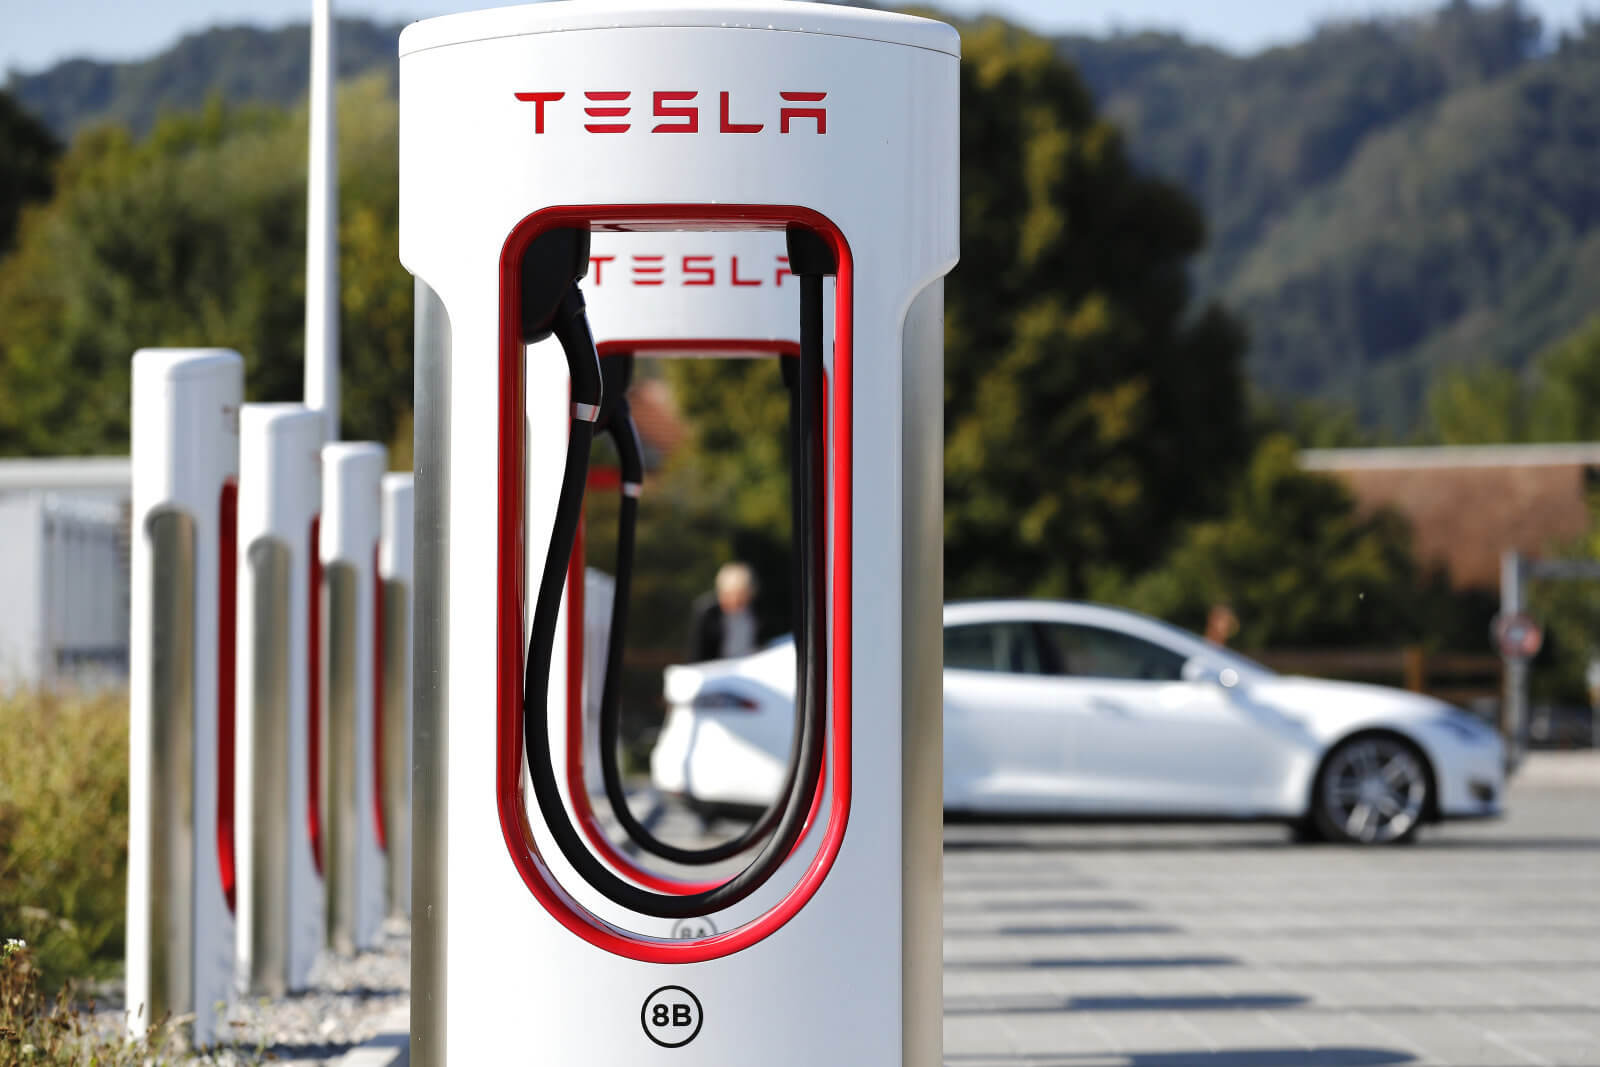 एक नए प्रकार की बैटरी सक्षम हो जाएगा बिजली के कारों में यात्रा करने के लिए लगभग 2,400 मील रिचार्जिंग के बिना